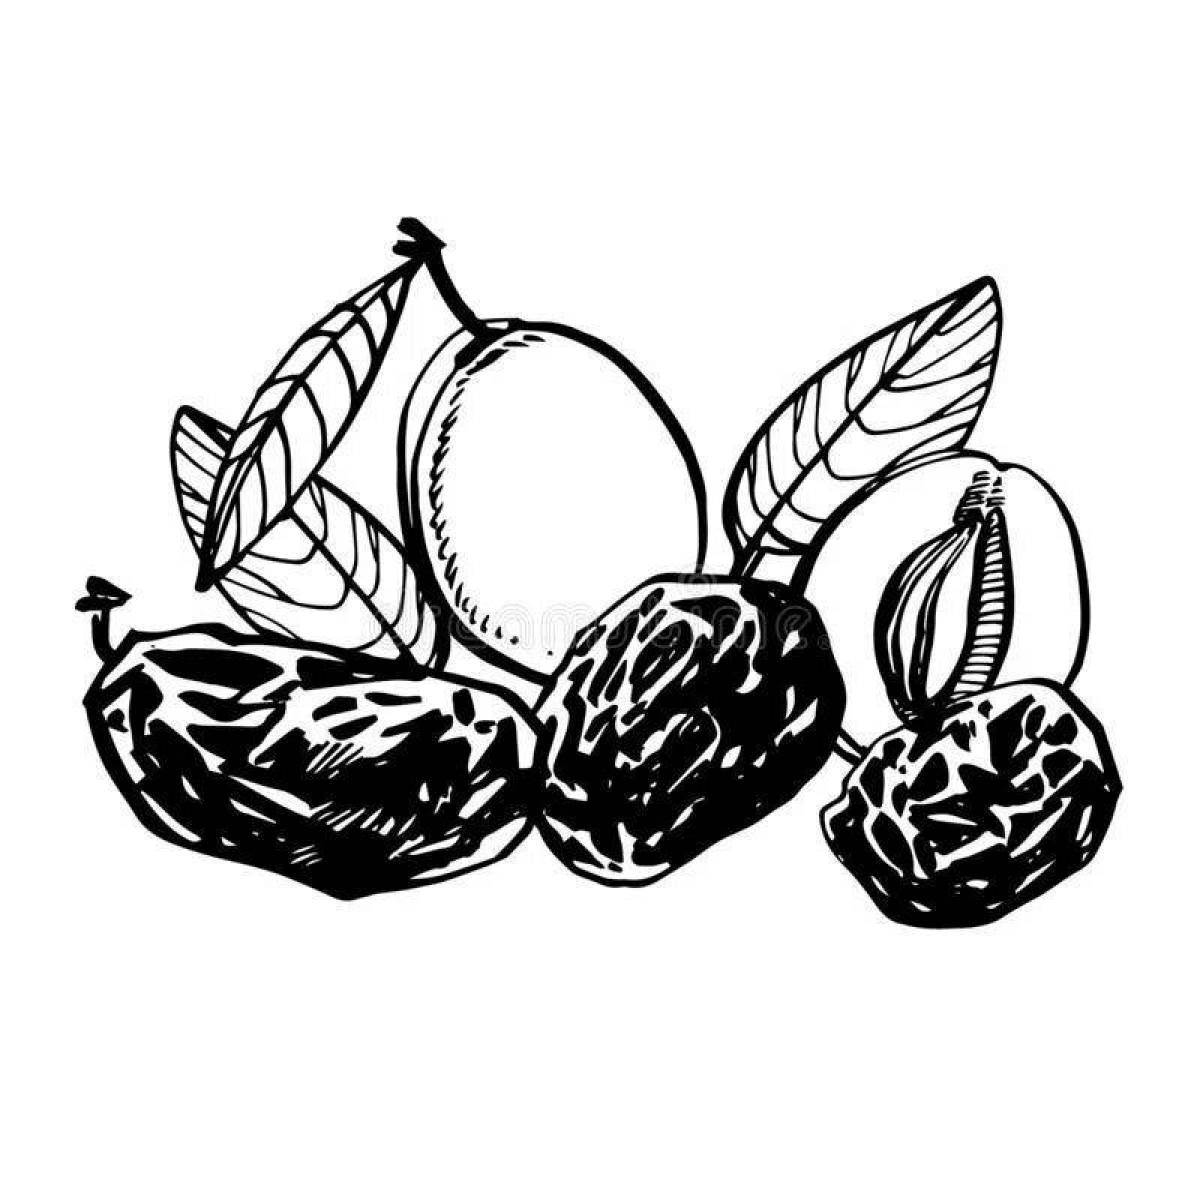 Подробная страница раскраски финиковых фруктов